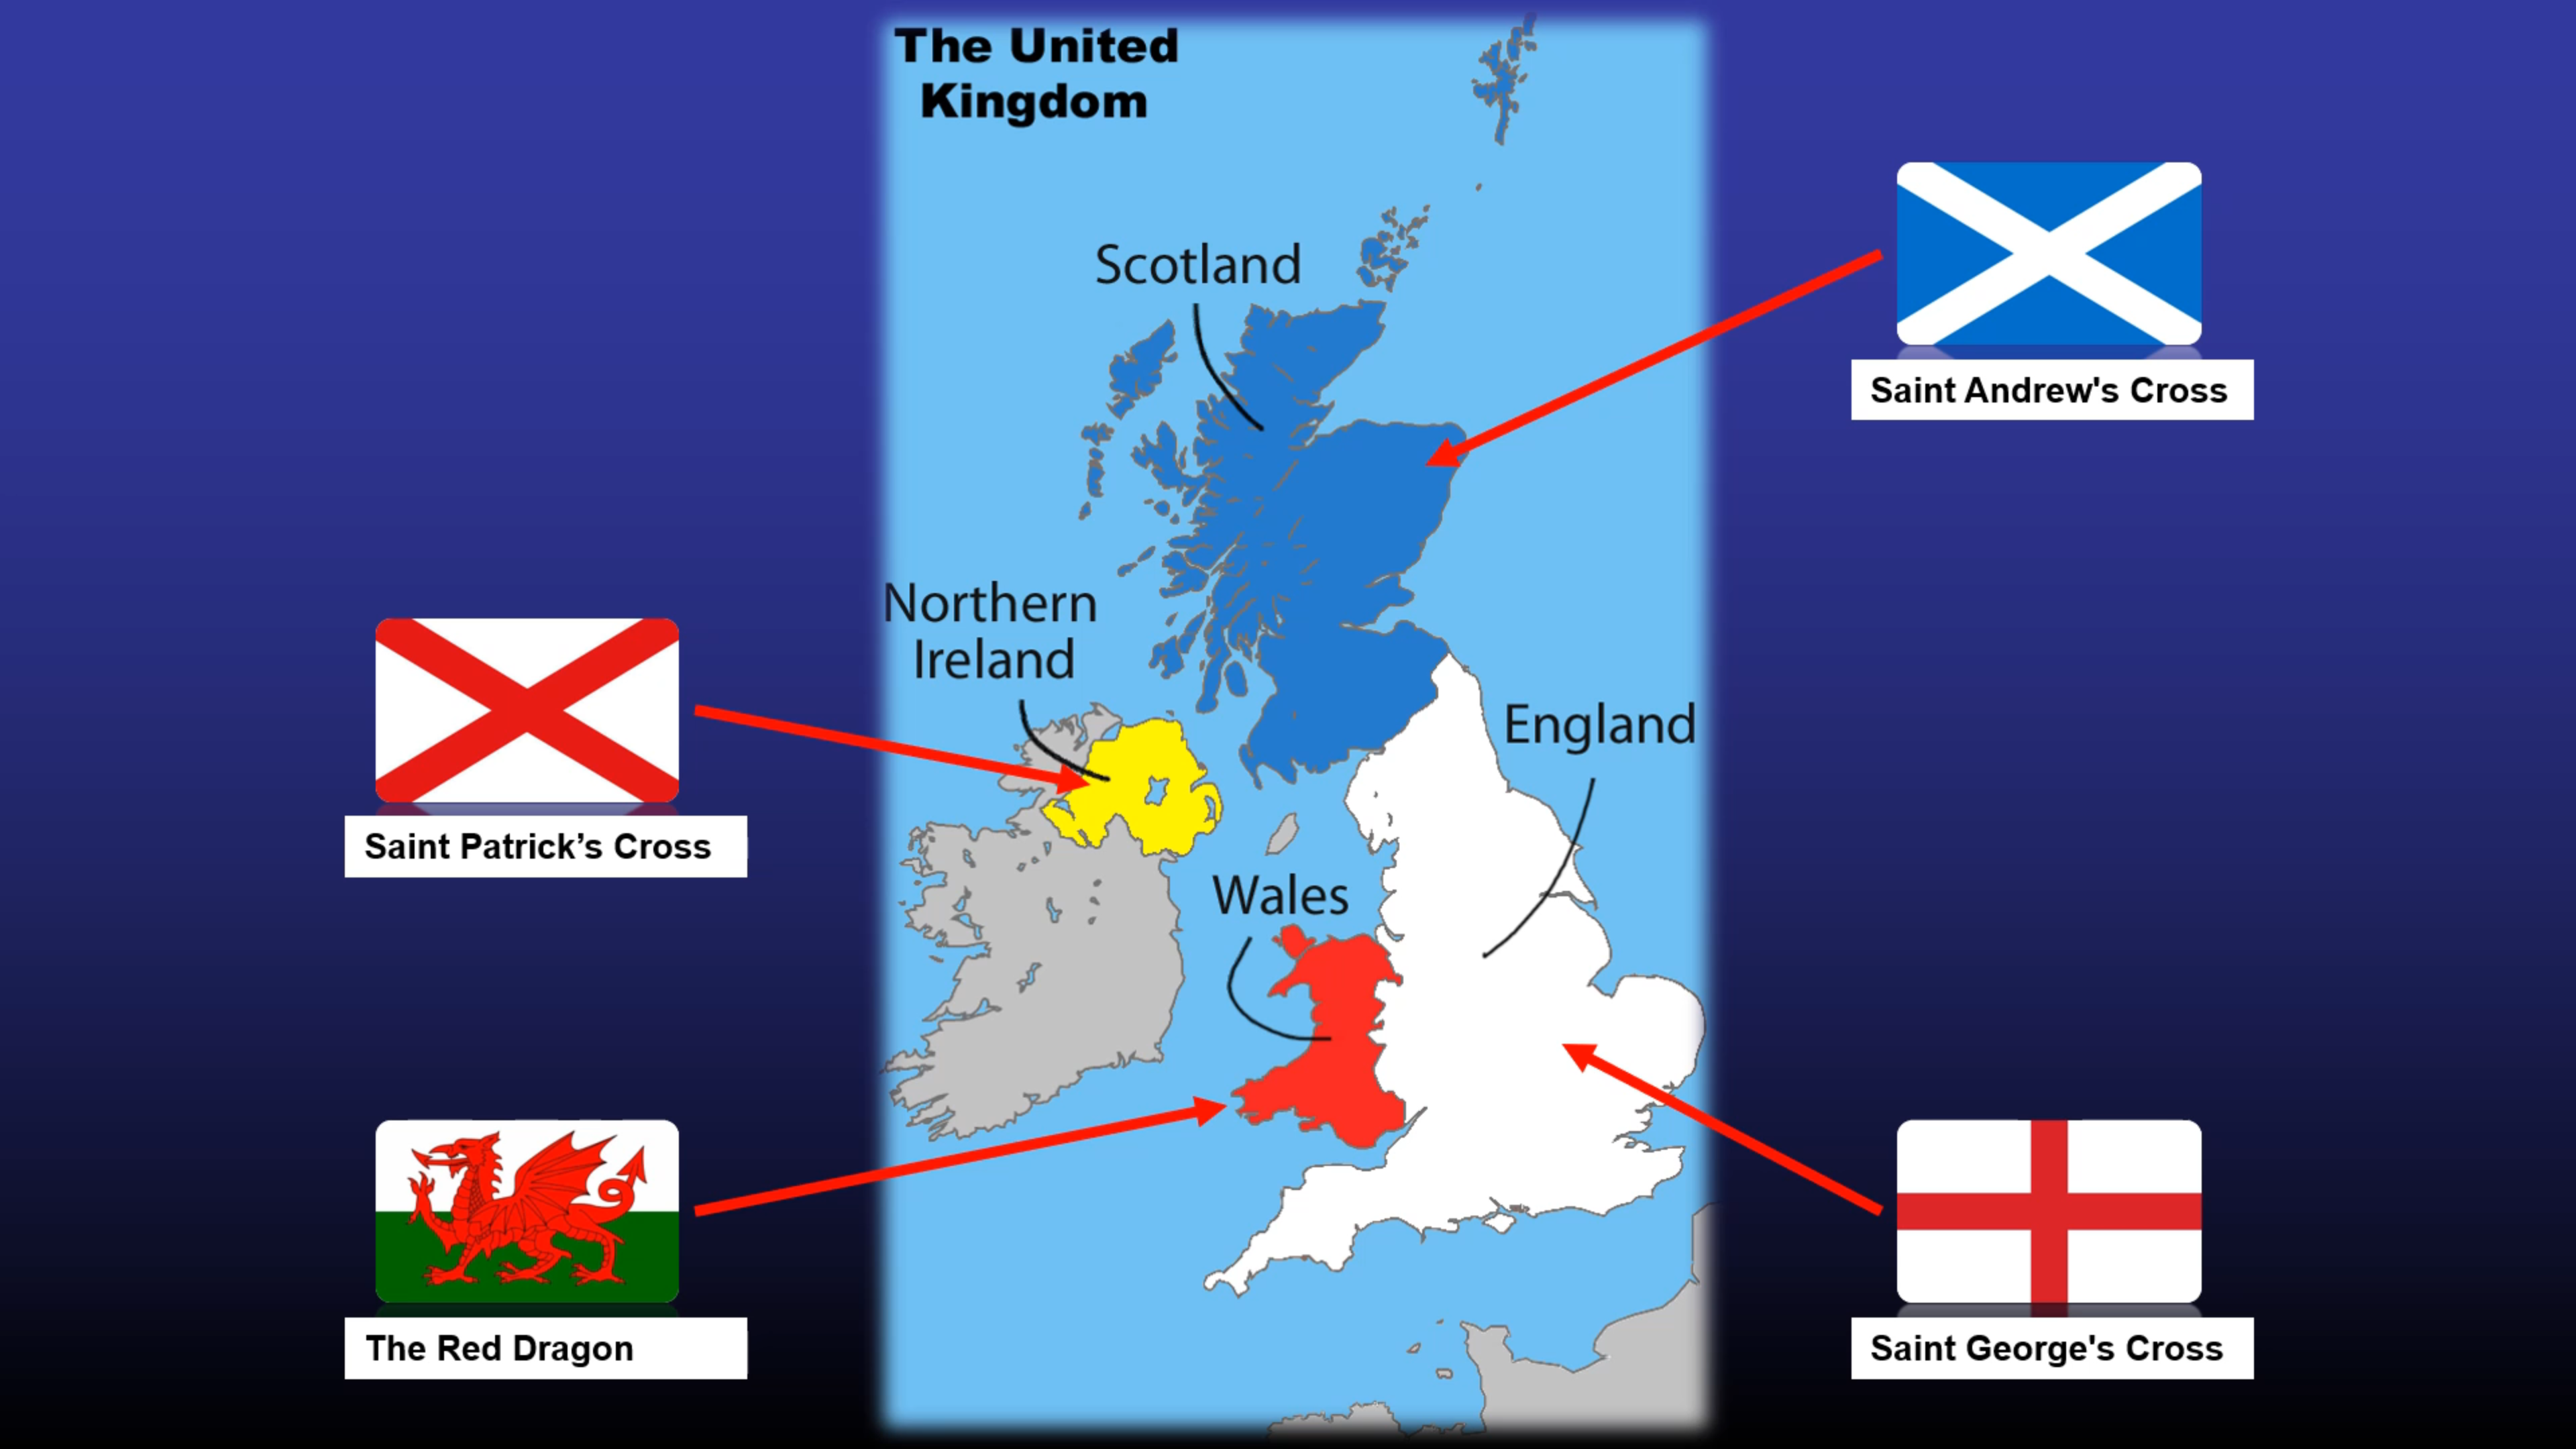 UK & the Union Jack